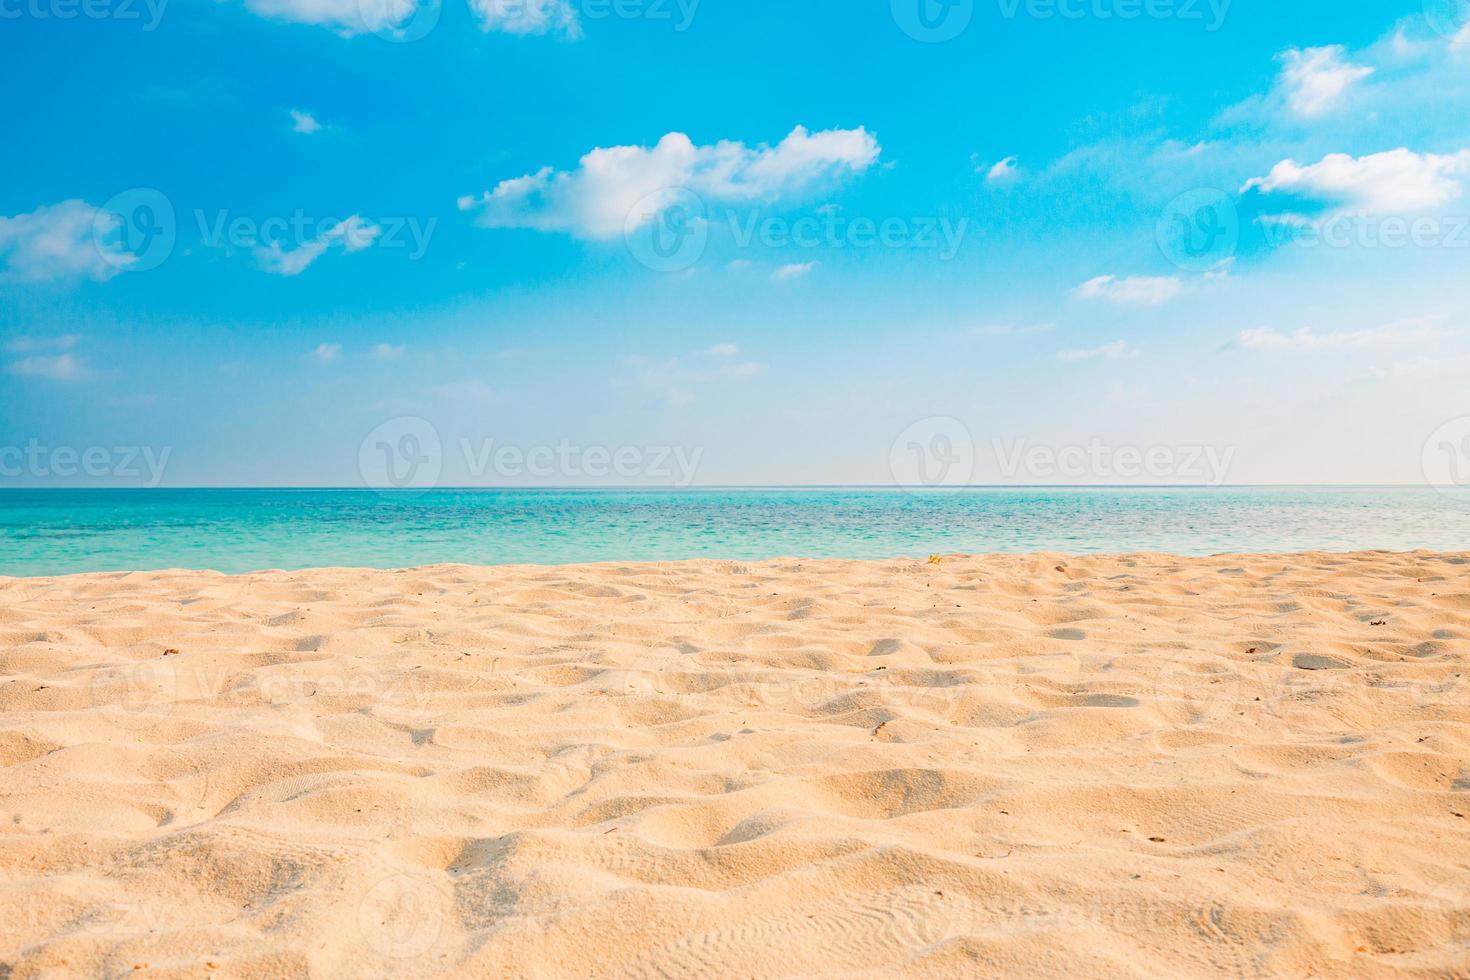 close-up van zand op het strand en de blauwe zomerhemel. panoramisch strandlandschap. leeg tropisch strand en zeegezicht. oranje en gouden zonsonderganghemel, zacht zand, kalmte, rustig ontspannend zonlicht, zomerstemming foto